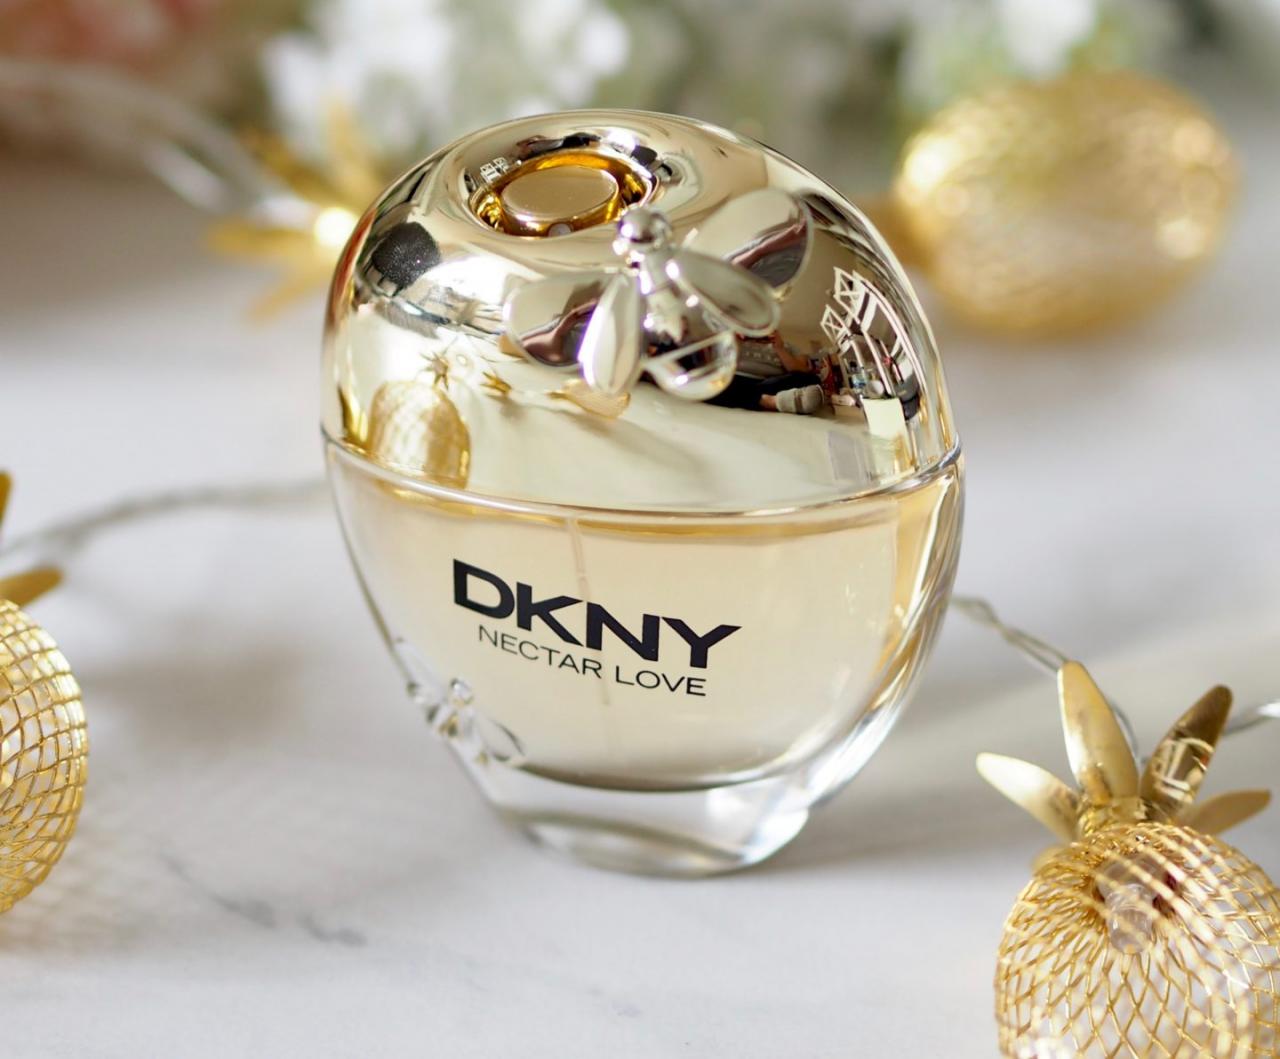 Nước hoa DKNY Nectar Love